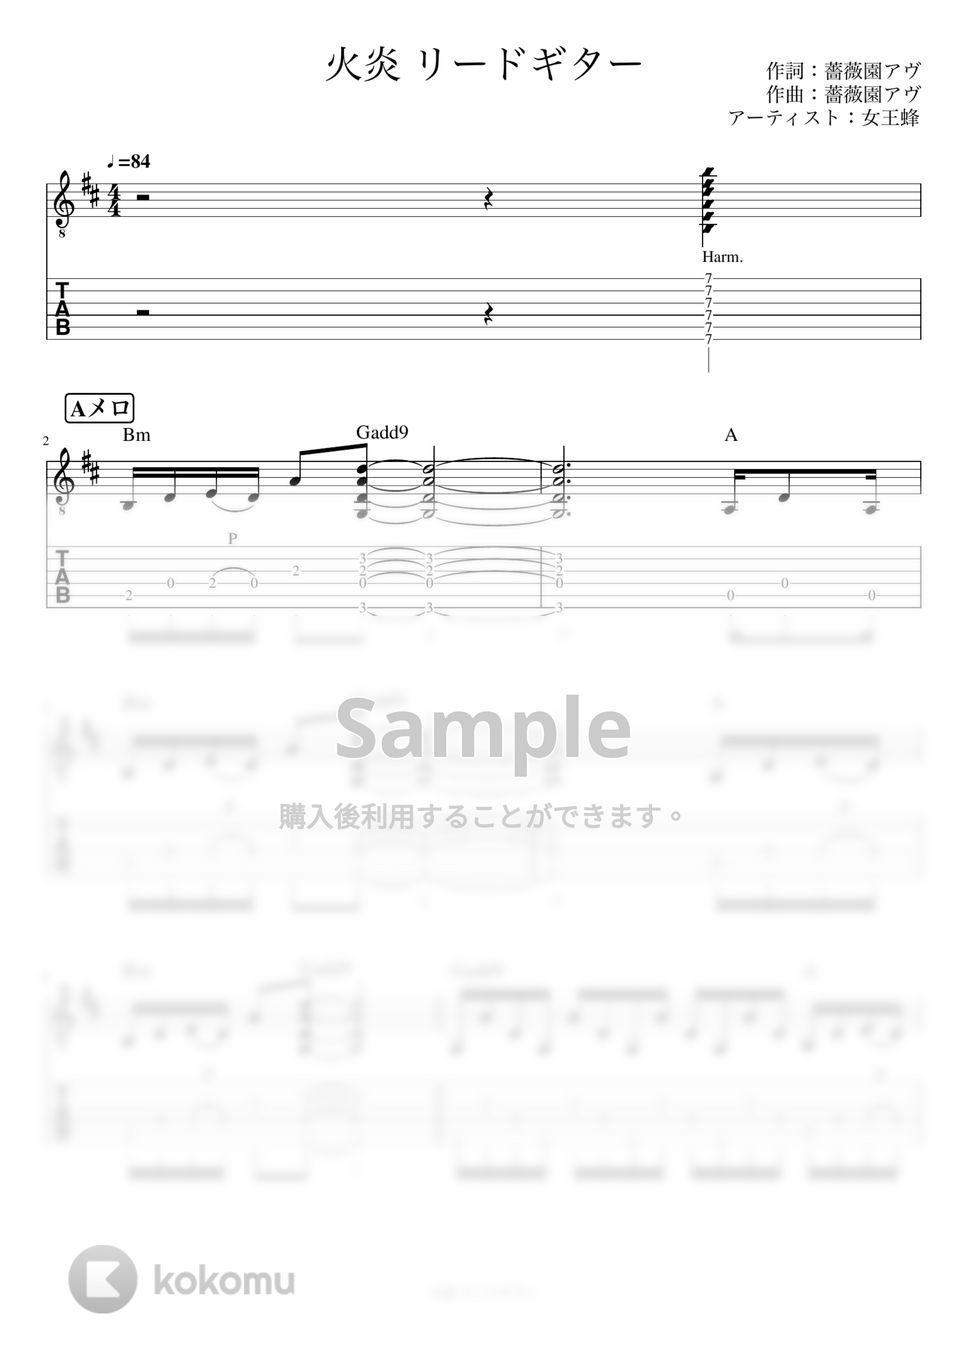 女王蜂 - 火炎 (リードギター) by J-ROCKチャンネル